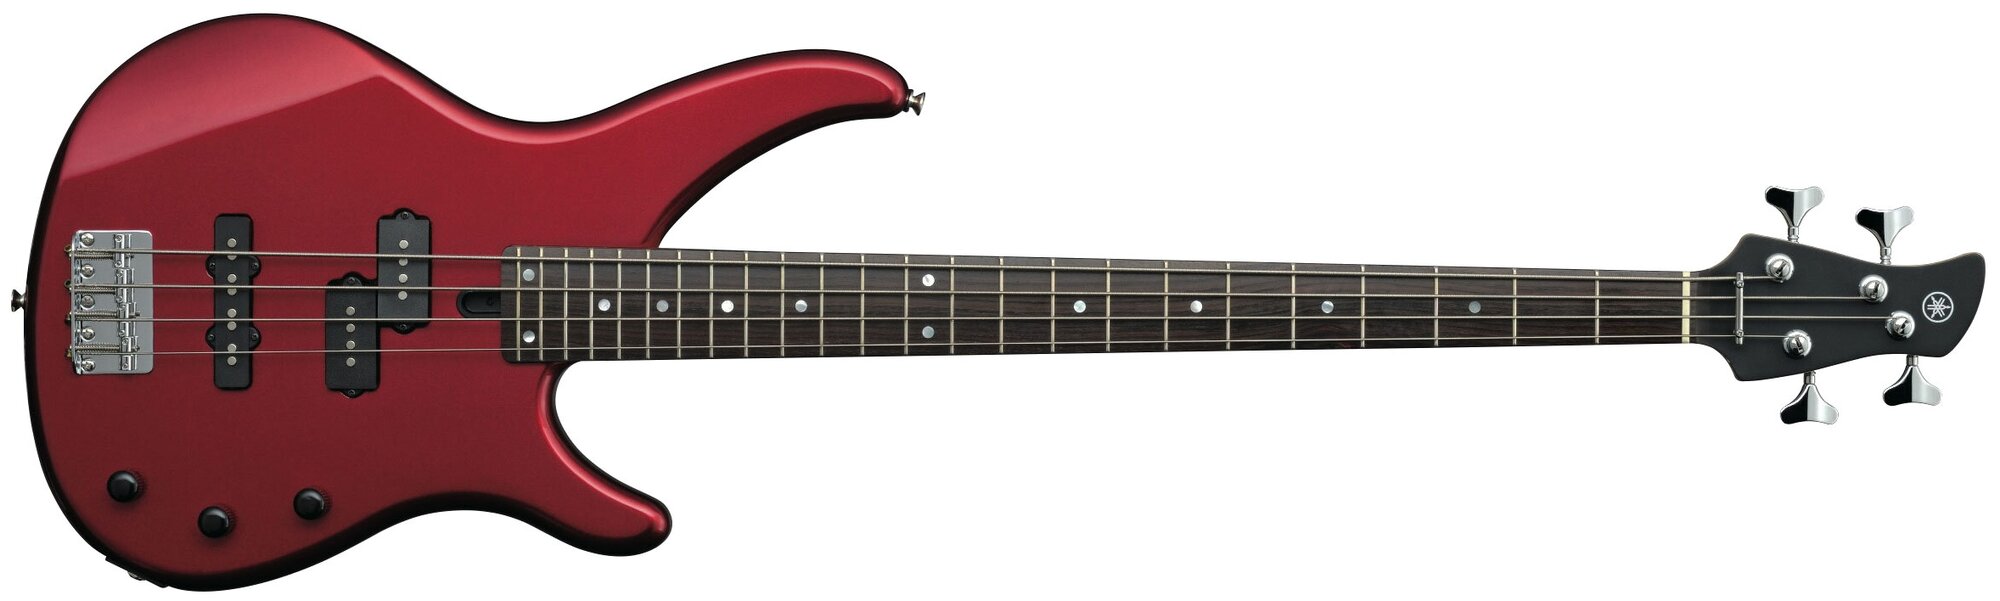 Бас-гитара Yamaha Trbx174, красный металлик .